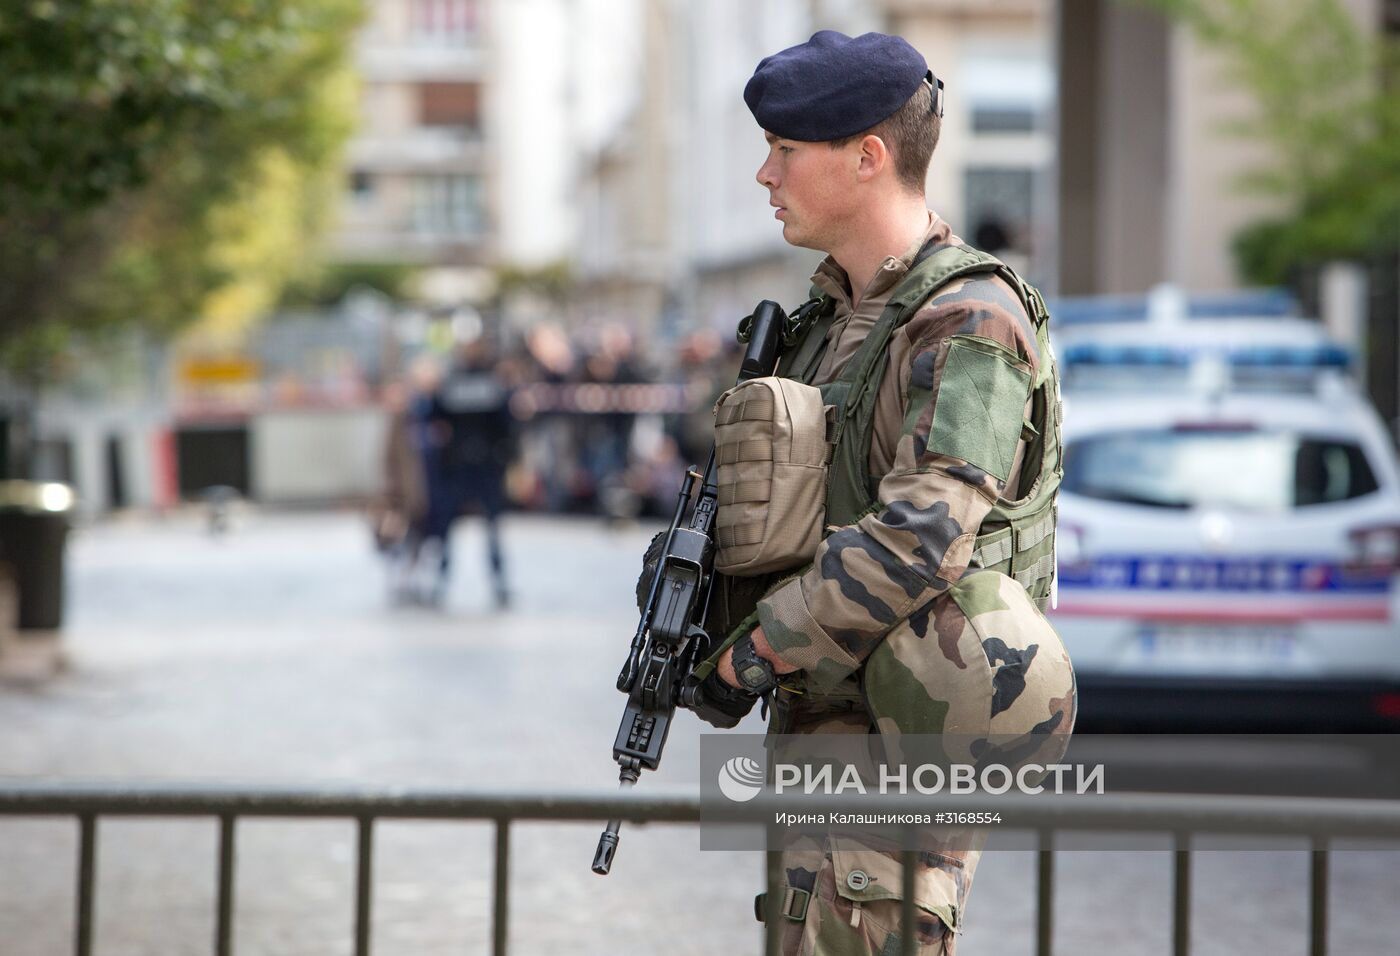 Автомобиль наехал на группу военнослужащих в пригороде Парижа